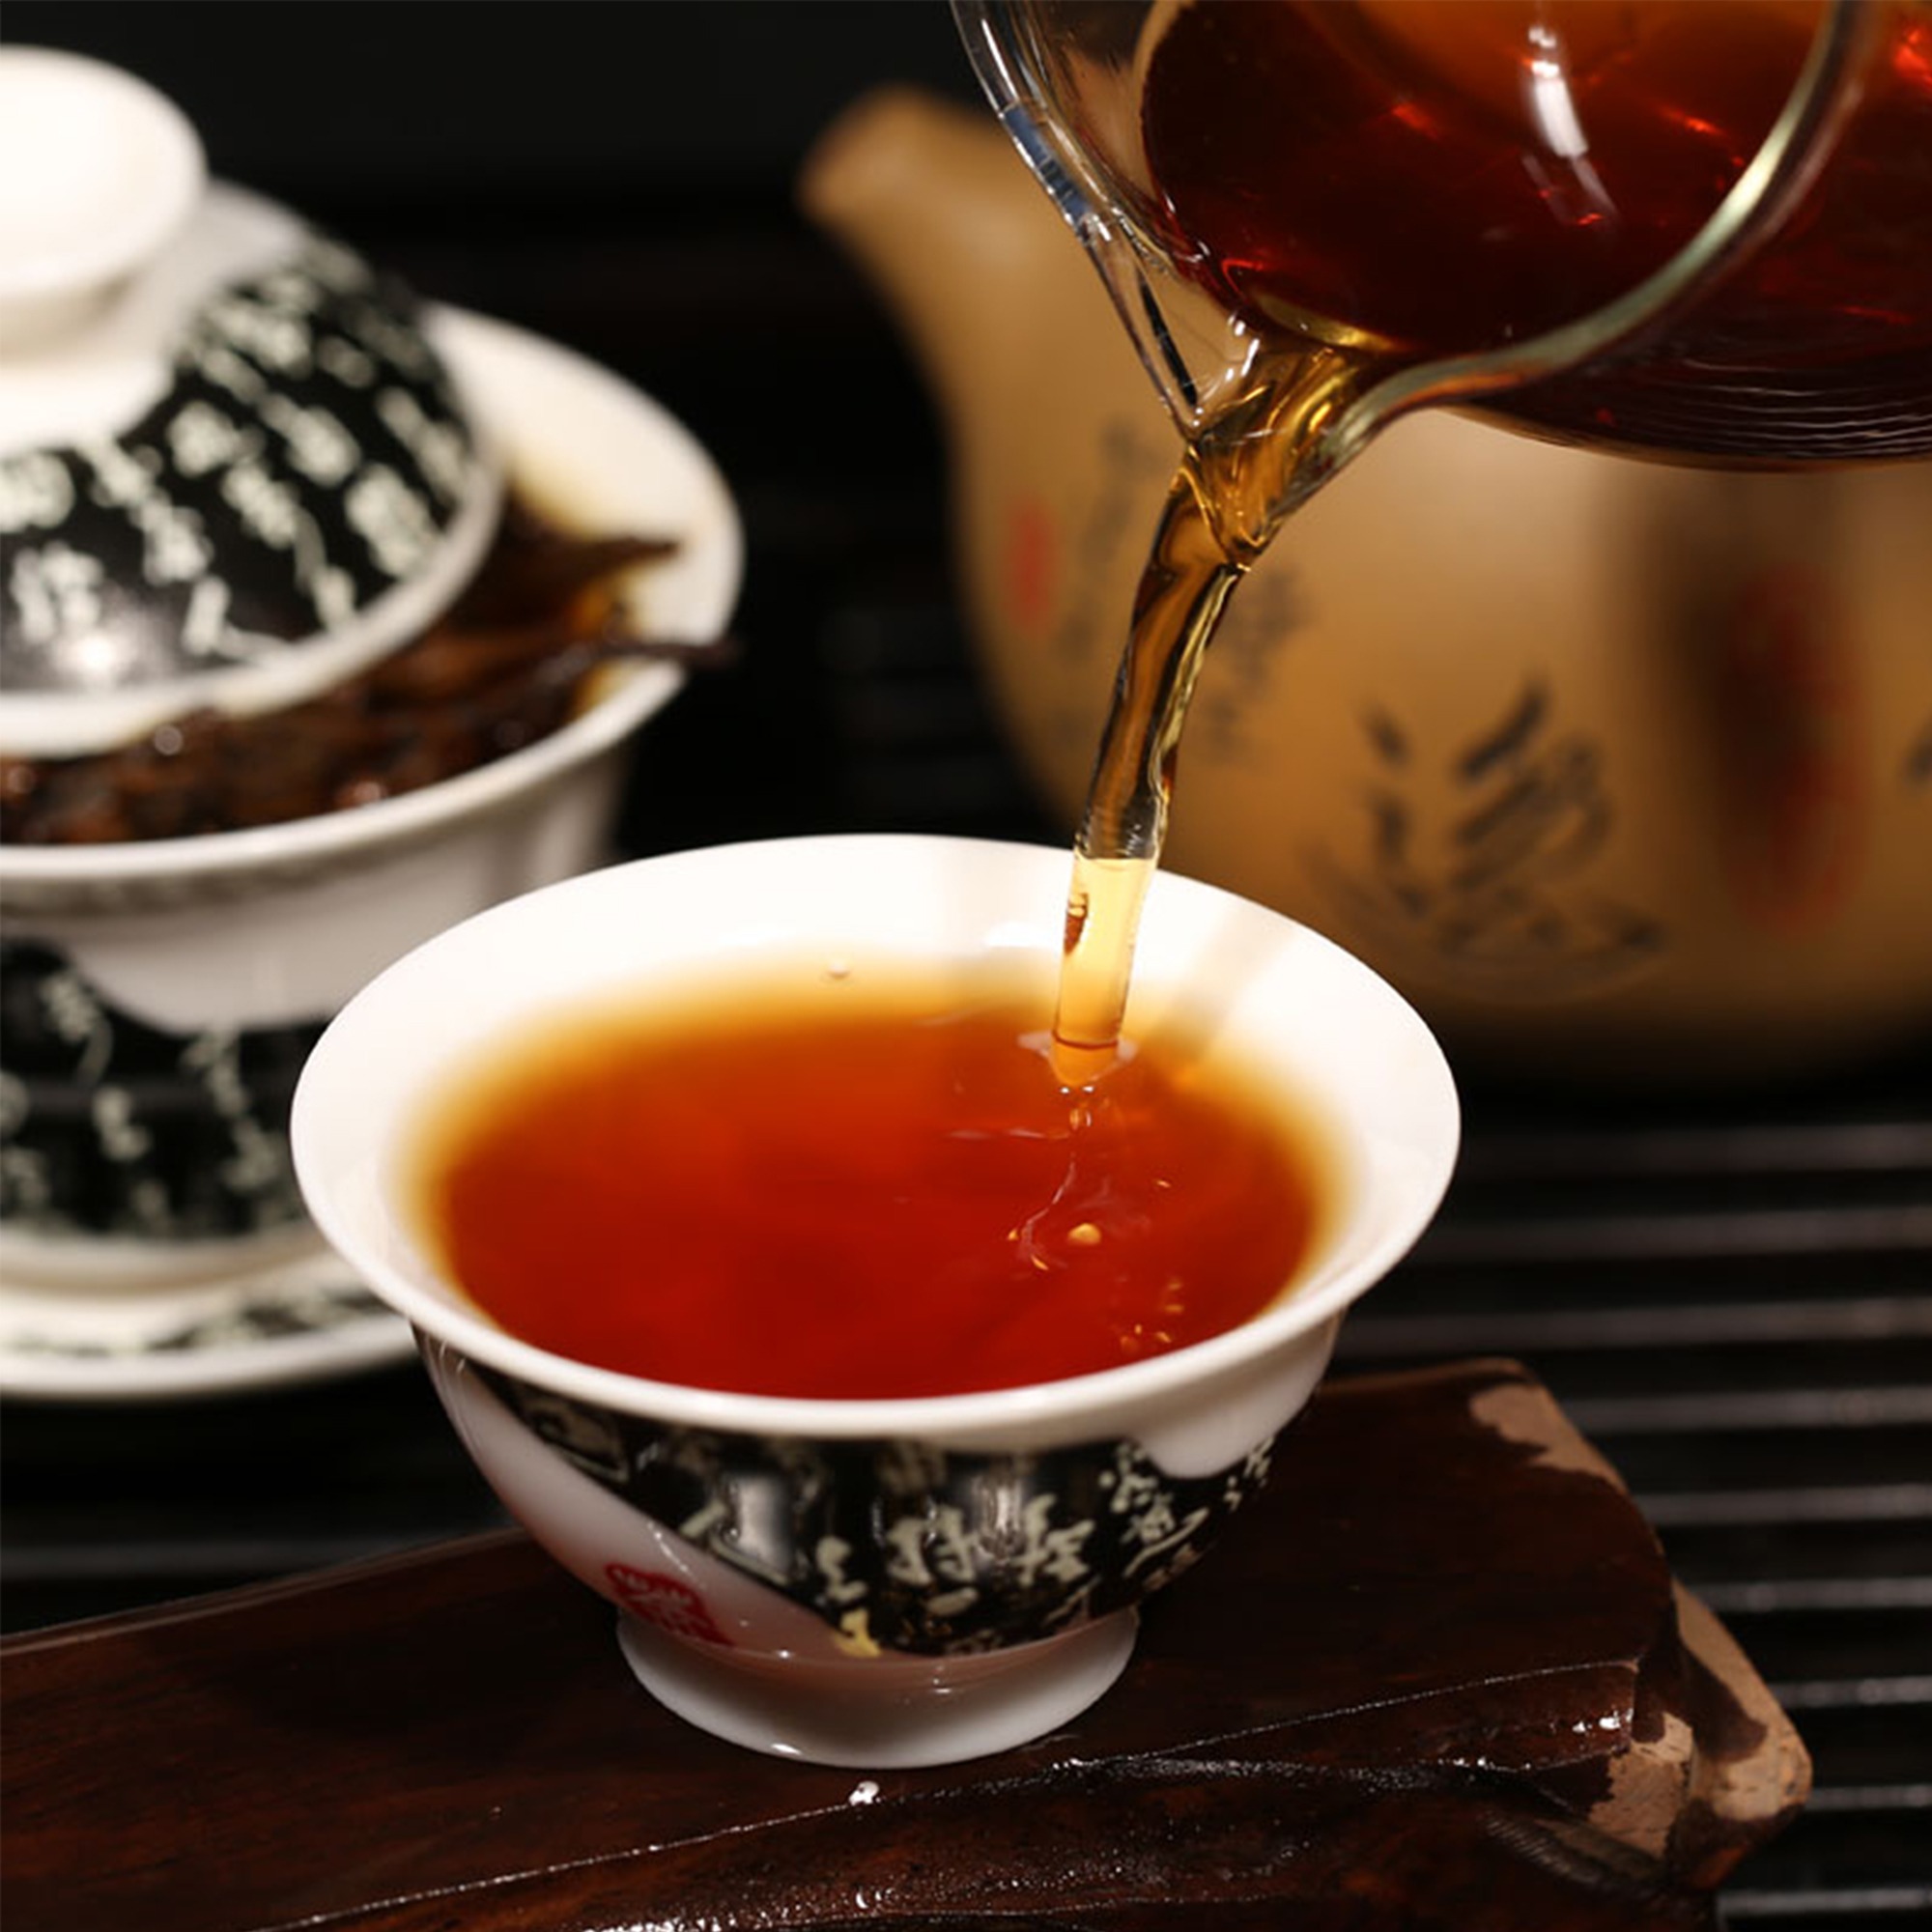 中国红茶滇红